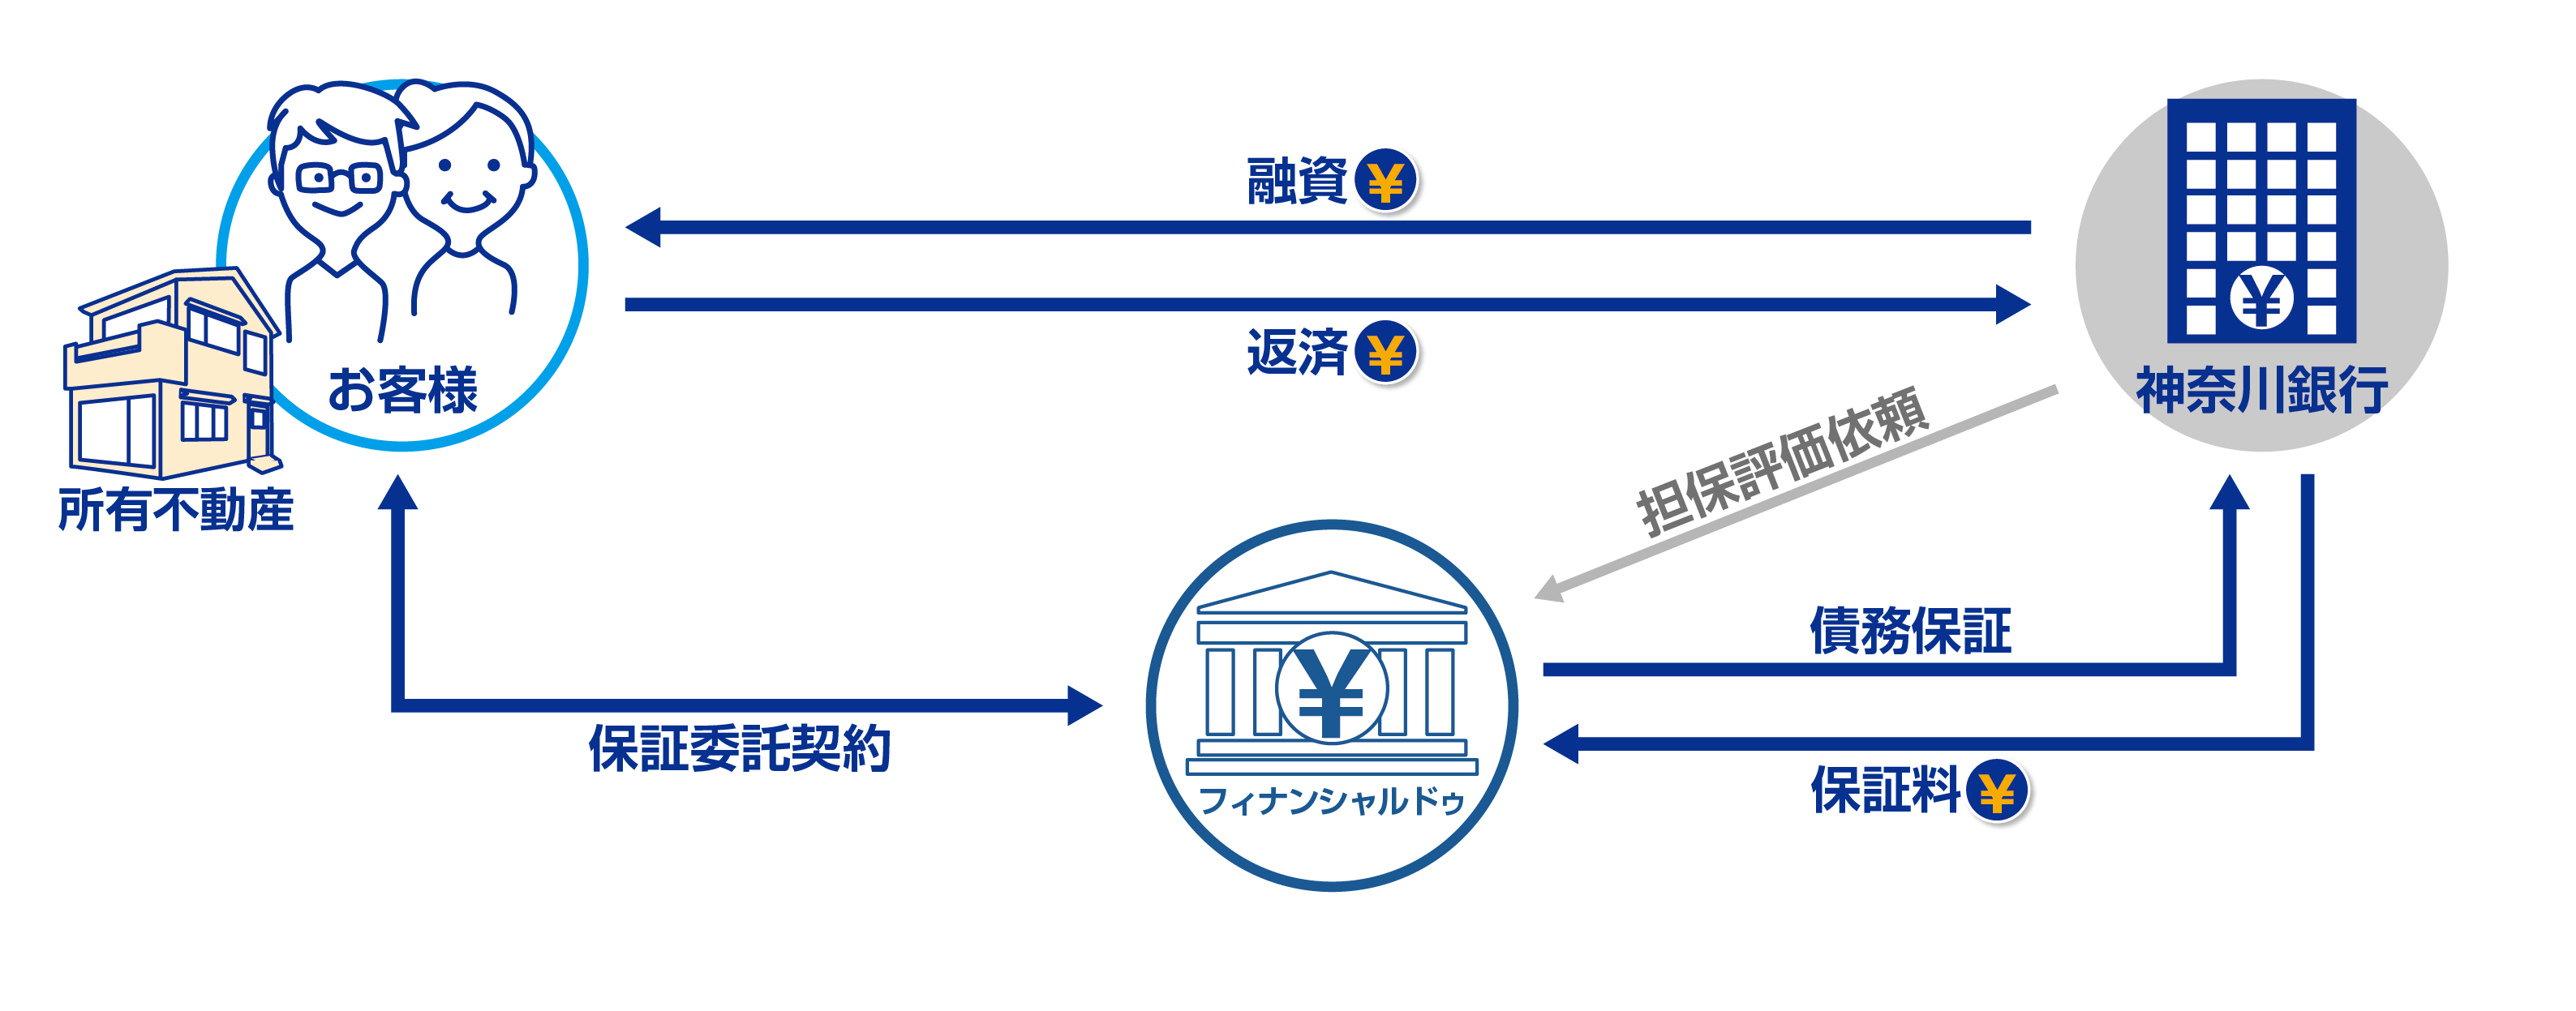 「かなぎんリバースモーゲージローンII」の保証事業で
神奈川銀行と提携　
～ 第六弾　神奈川県の金融機関と初提携 ～